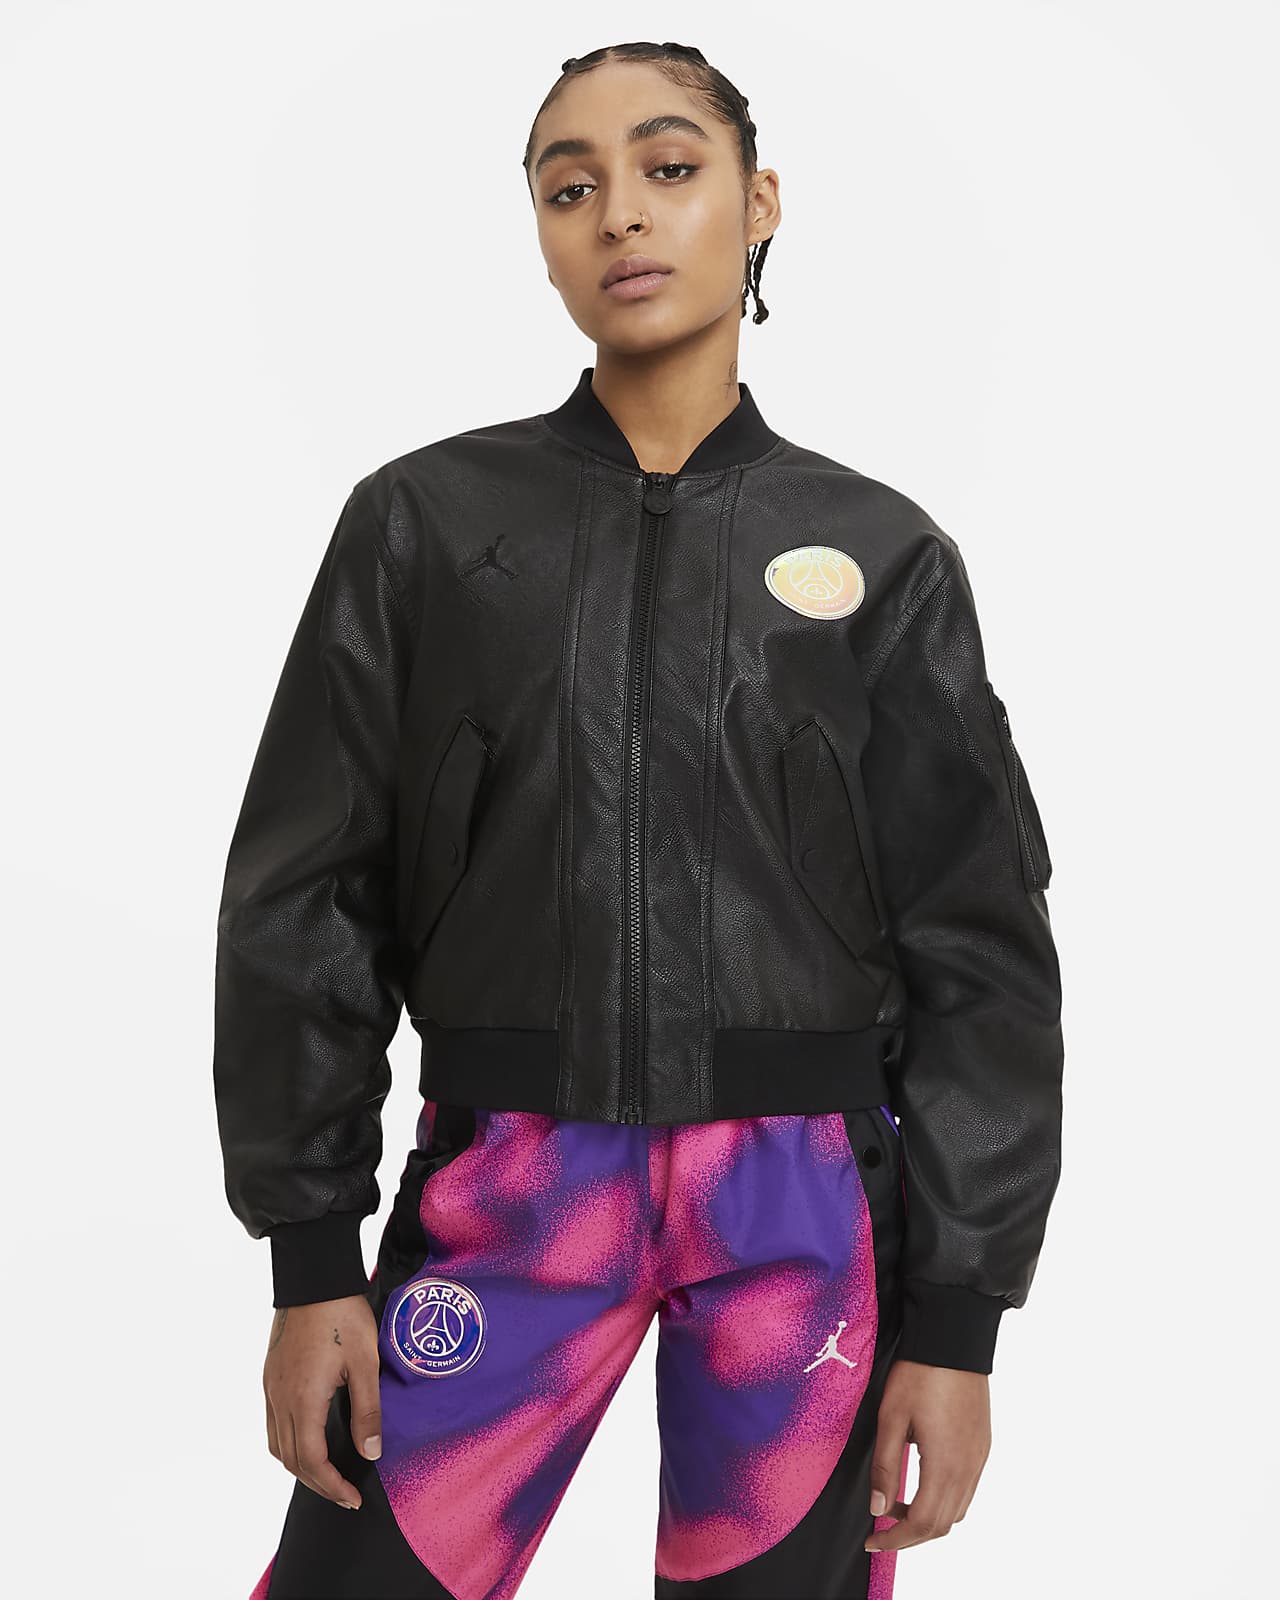 Womens Zip Up Bomber Jacket Lightweight Satin Baseball Biker Jacket Coats Outwear with Pocket